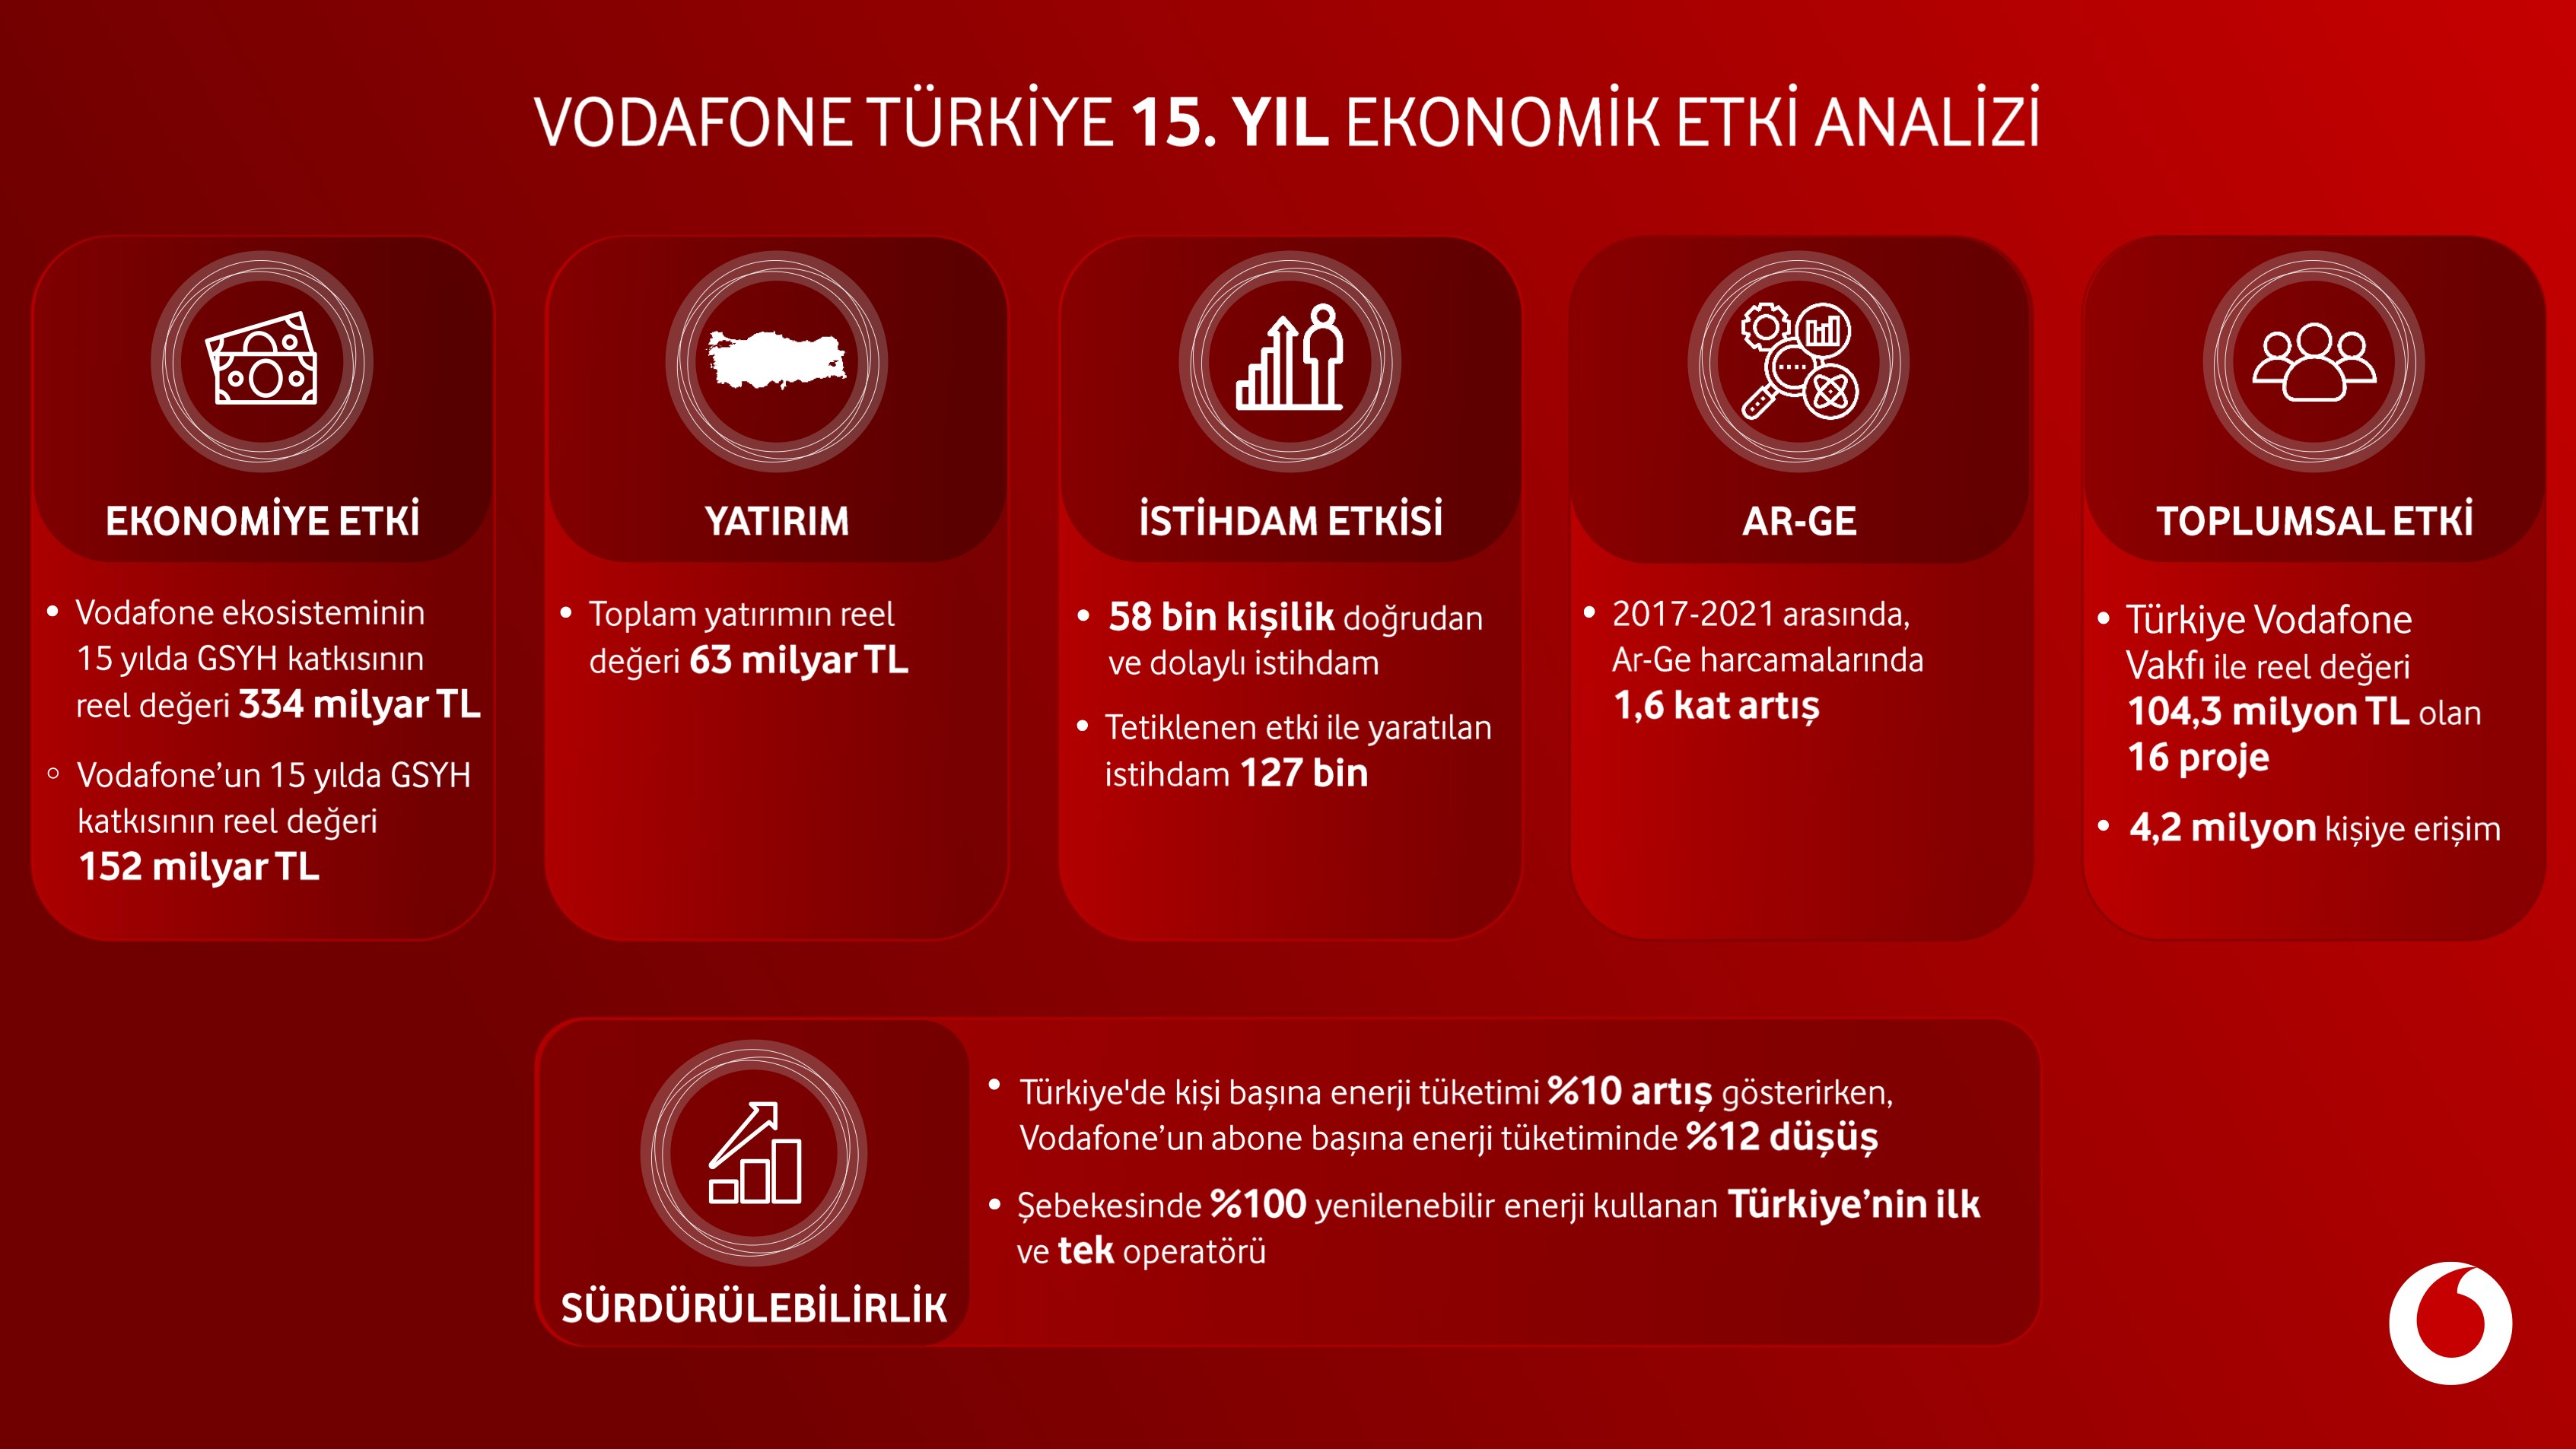 Vodafone'un son 15 yılda Türkiye ekonomisine katkısı açıklandı